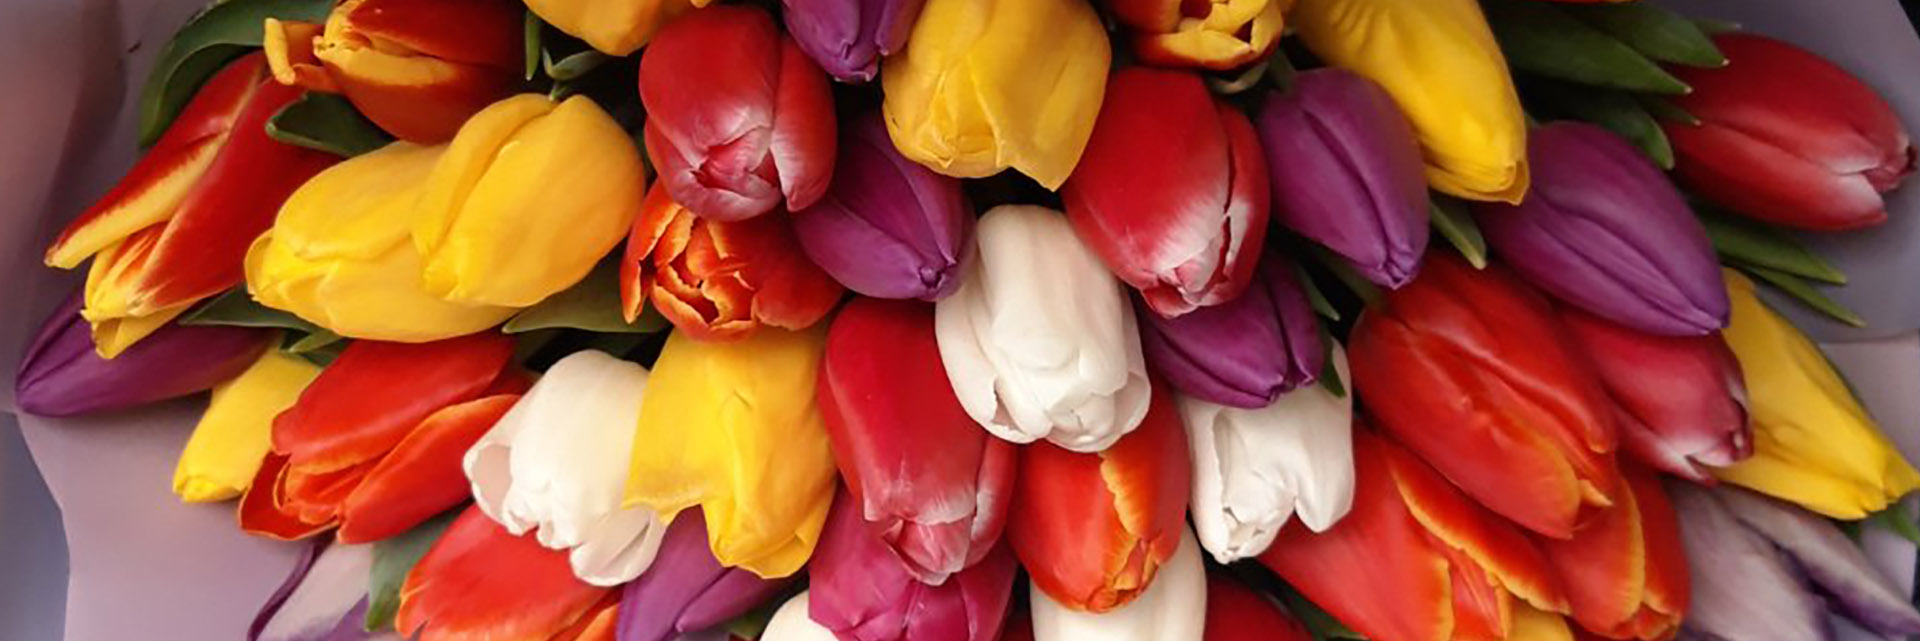 категория товаров Тюльпаны | Буковель | «Буковель Роза»